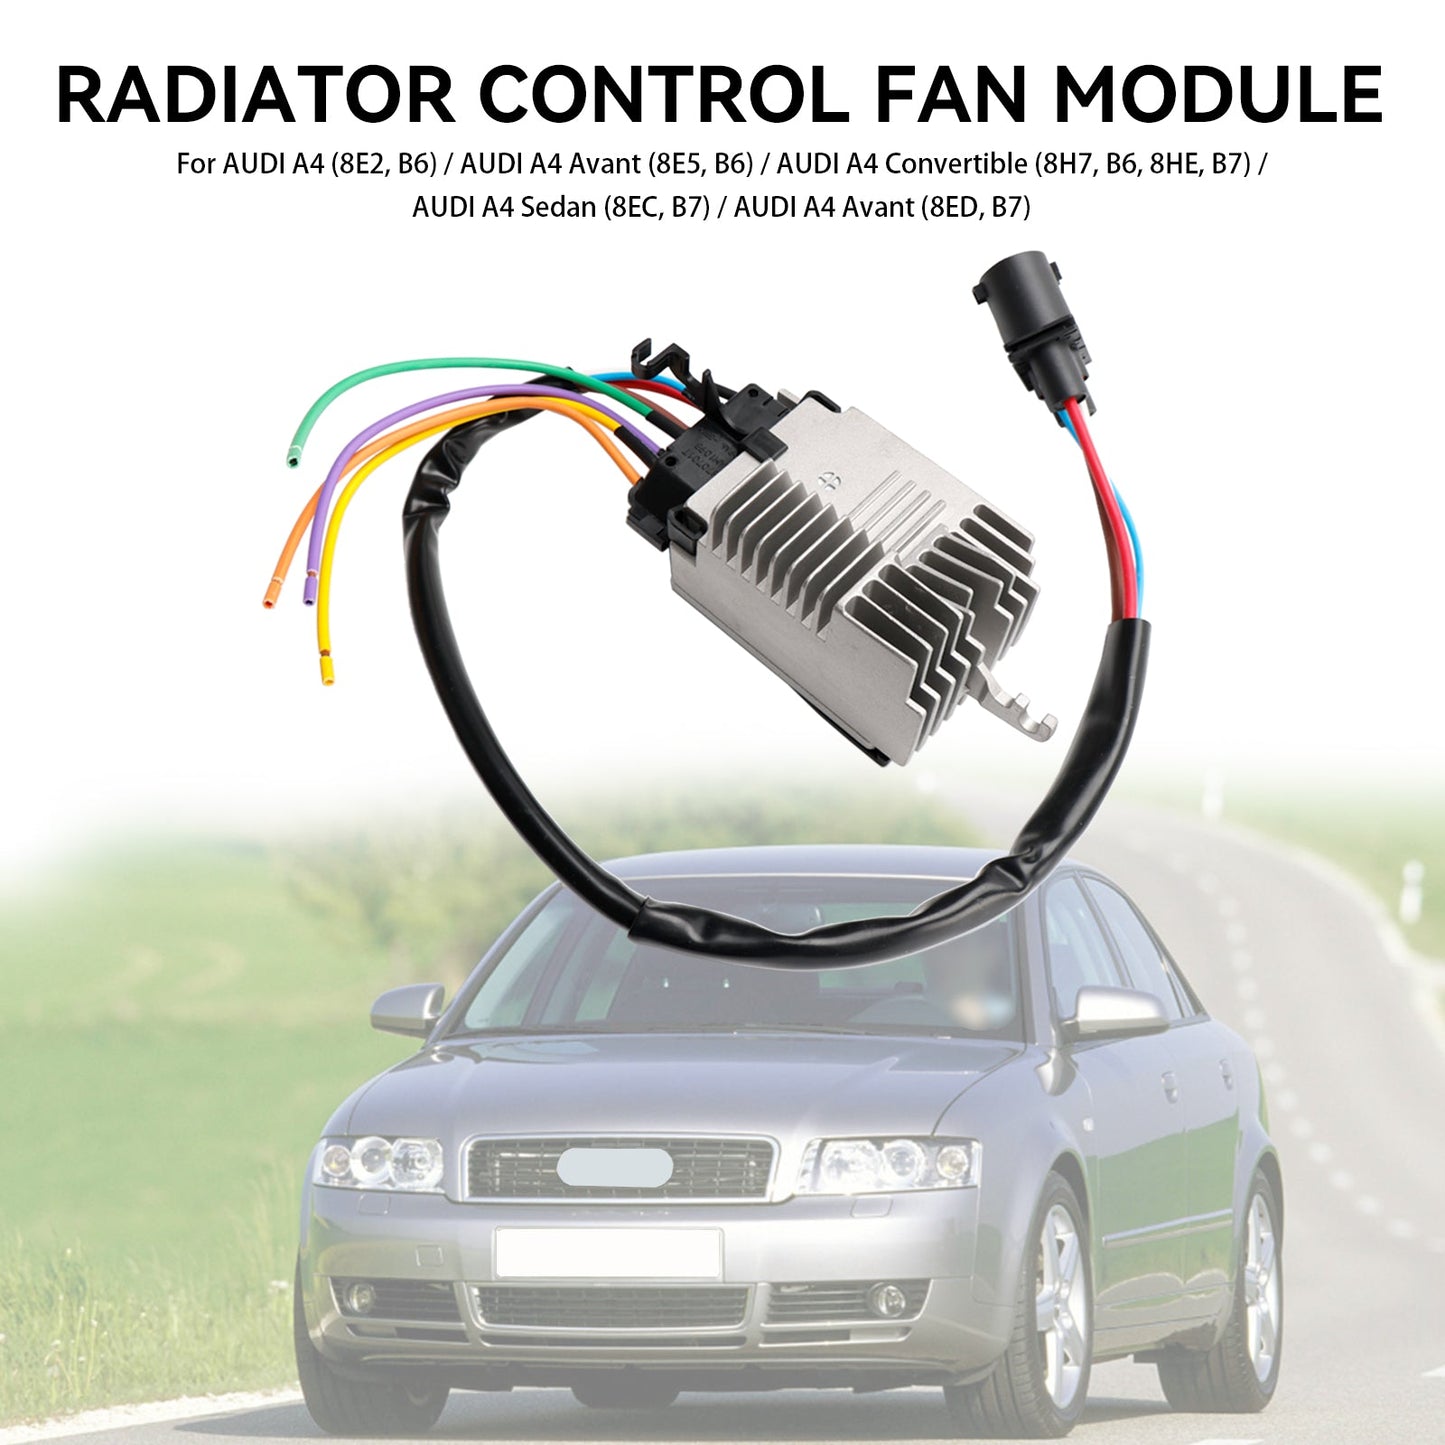 8E0959501AB 8E0959501AG Radiator Fan Control Unit Module fit Audi A4 8E2 8E5 B6